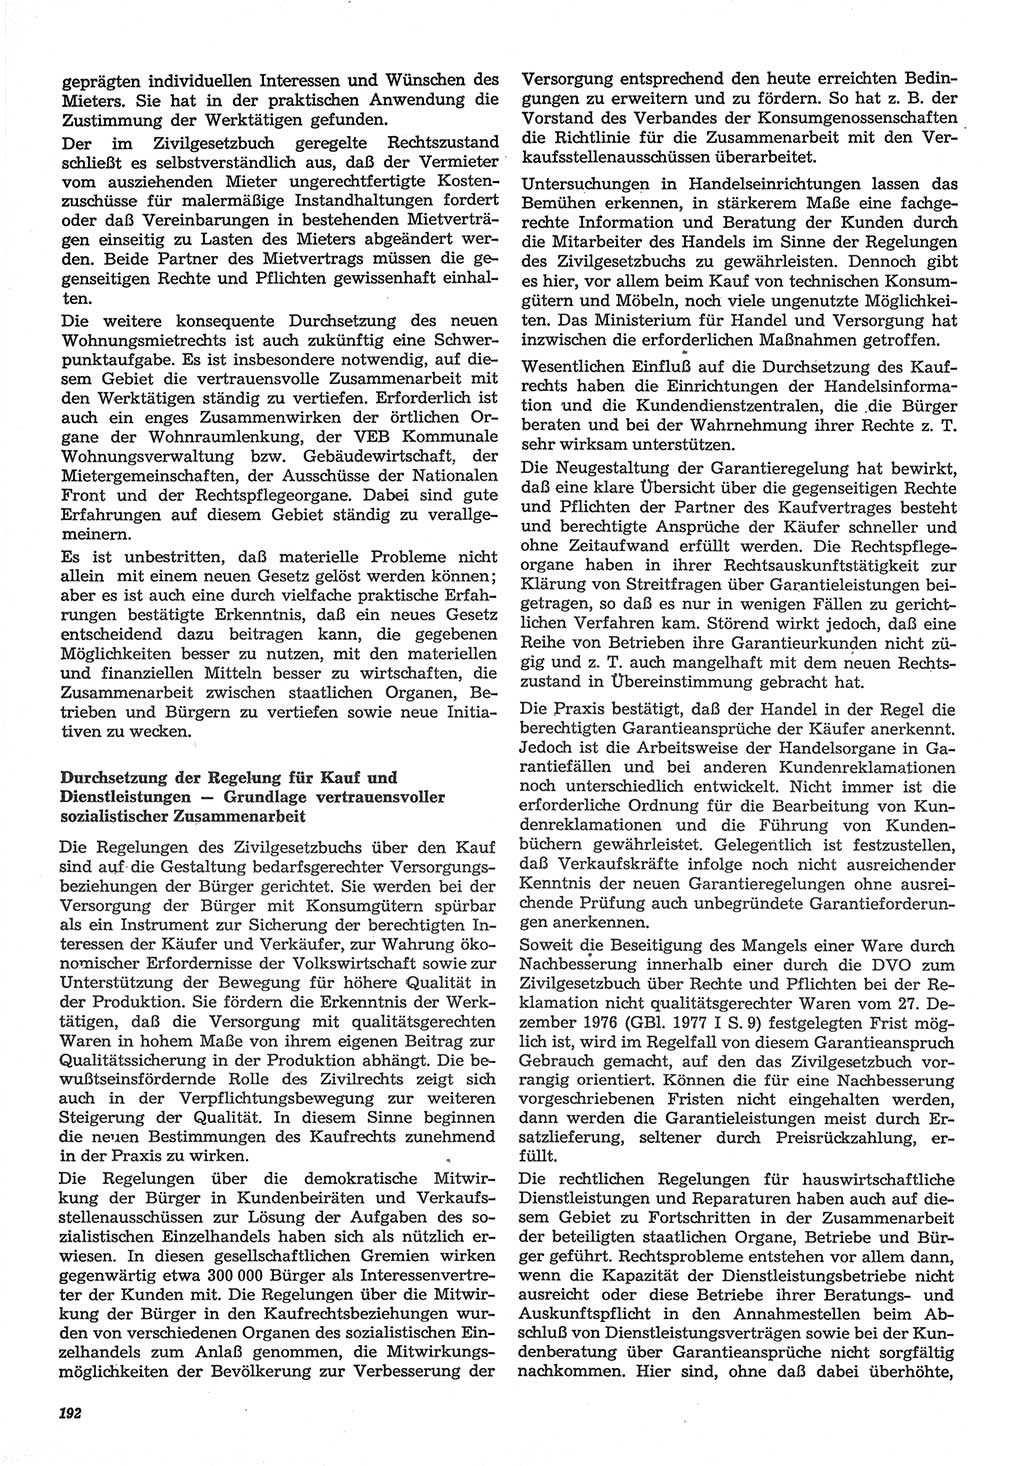 Neue Justiz (NJ), Zeitschrift für Recht und Rechtswissenschaft-Zeitschrift, sozialistisches Recht und Gesetzlichkeit, 31. Jahrgang 1977, Seite 192 (NJ DDR 1977, S. 192)